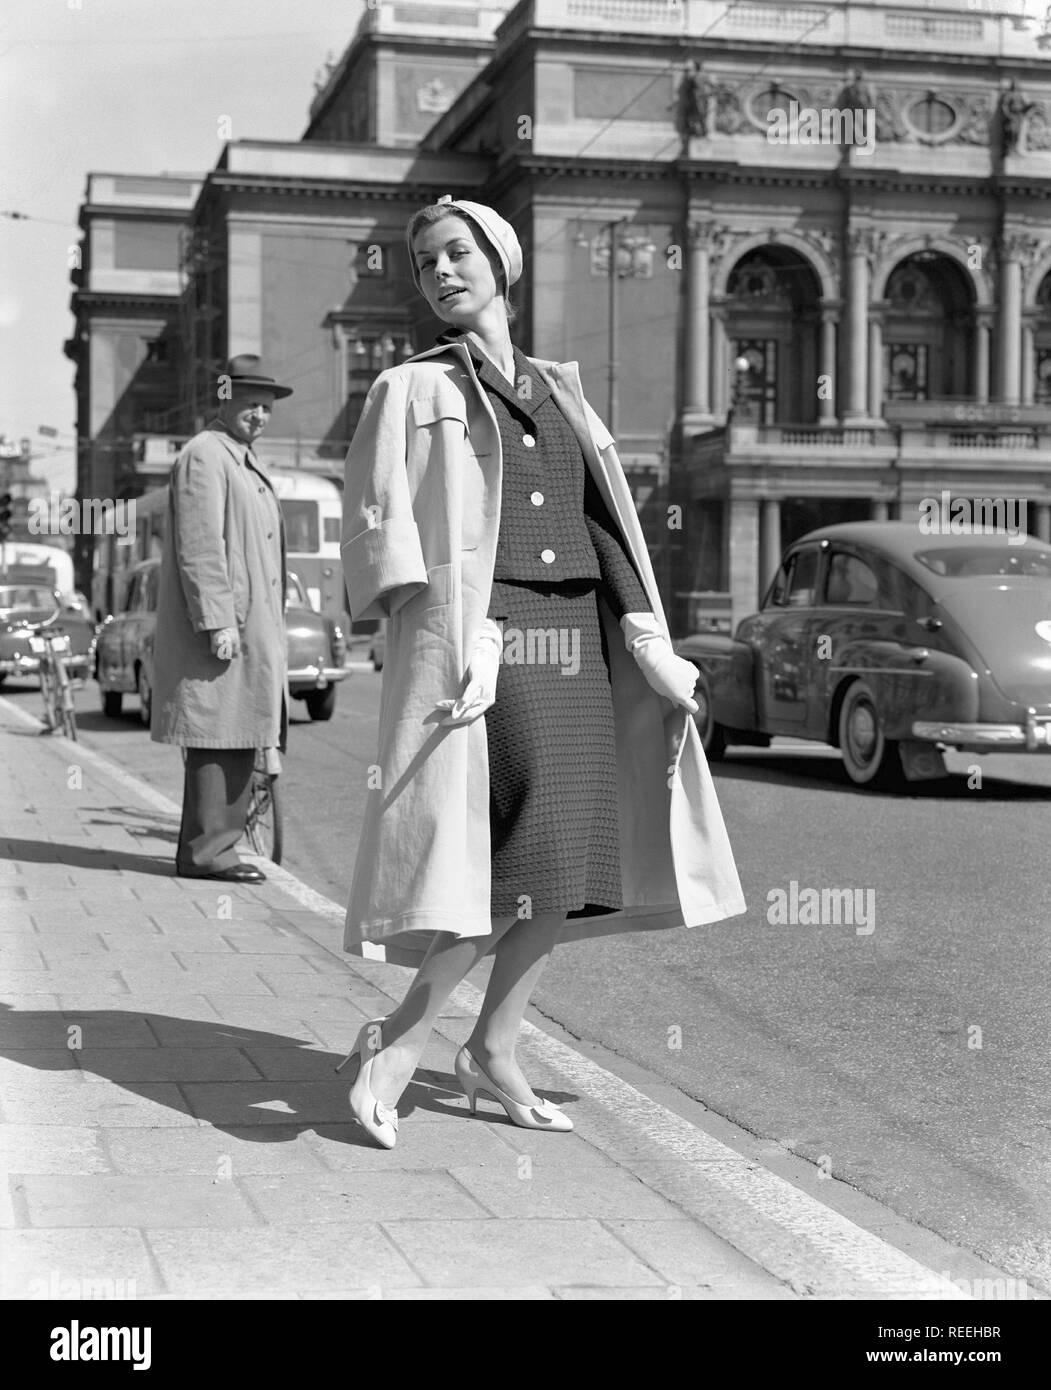 À la mode dans les années 1950. Une jeune femme porte une robe typique des années  50. Elle pose dans la tenue même si les voitures passe son dans la rue. La